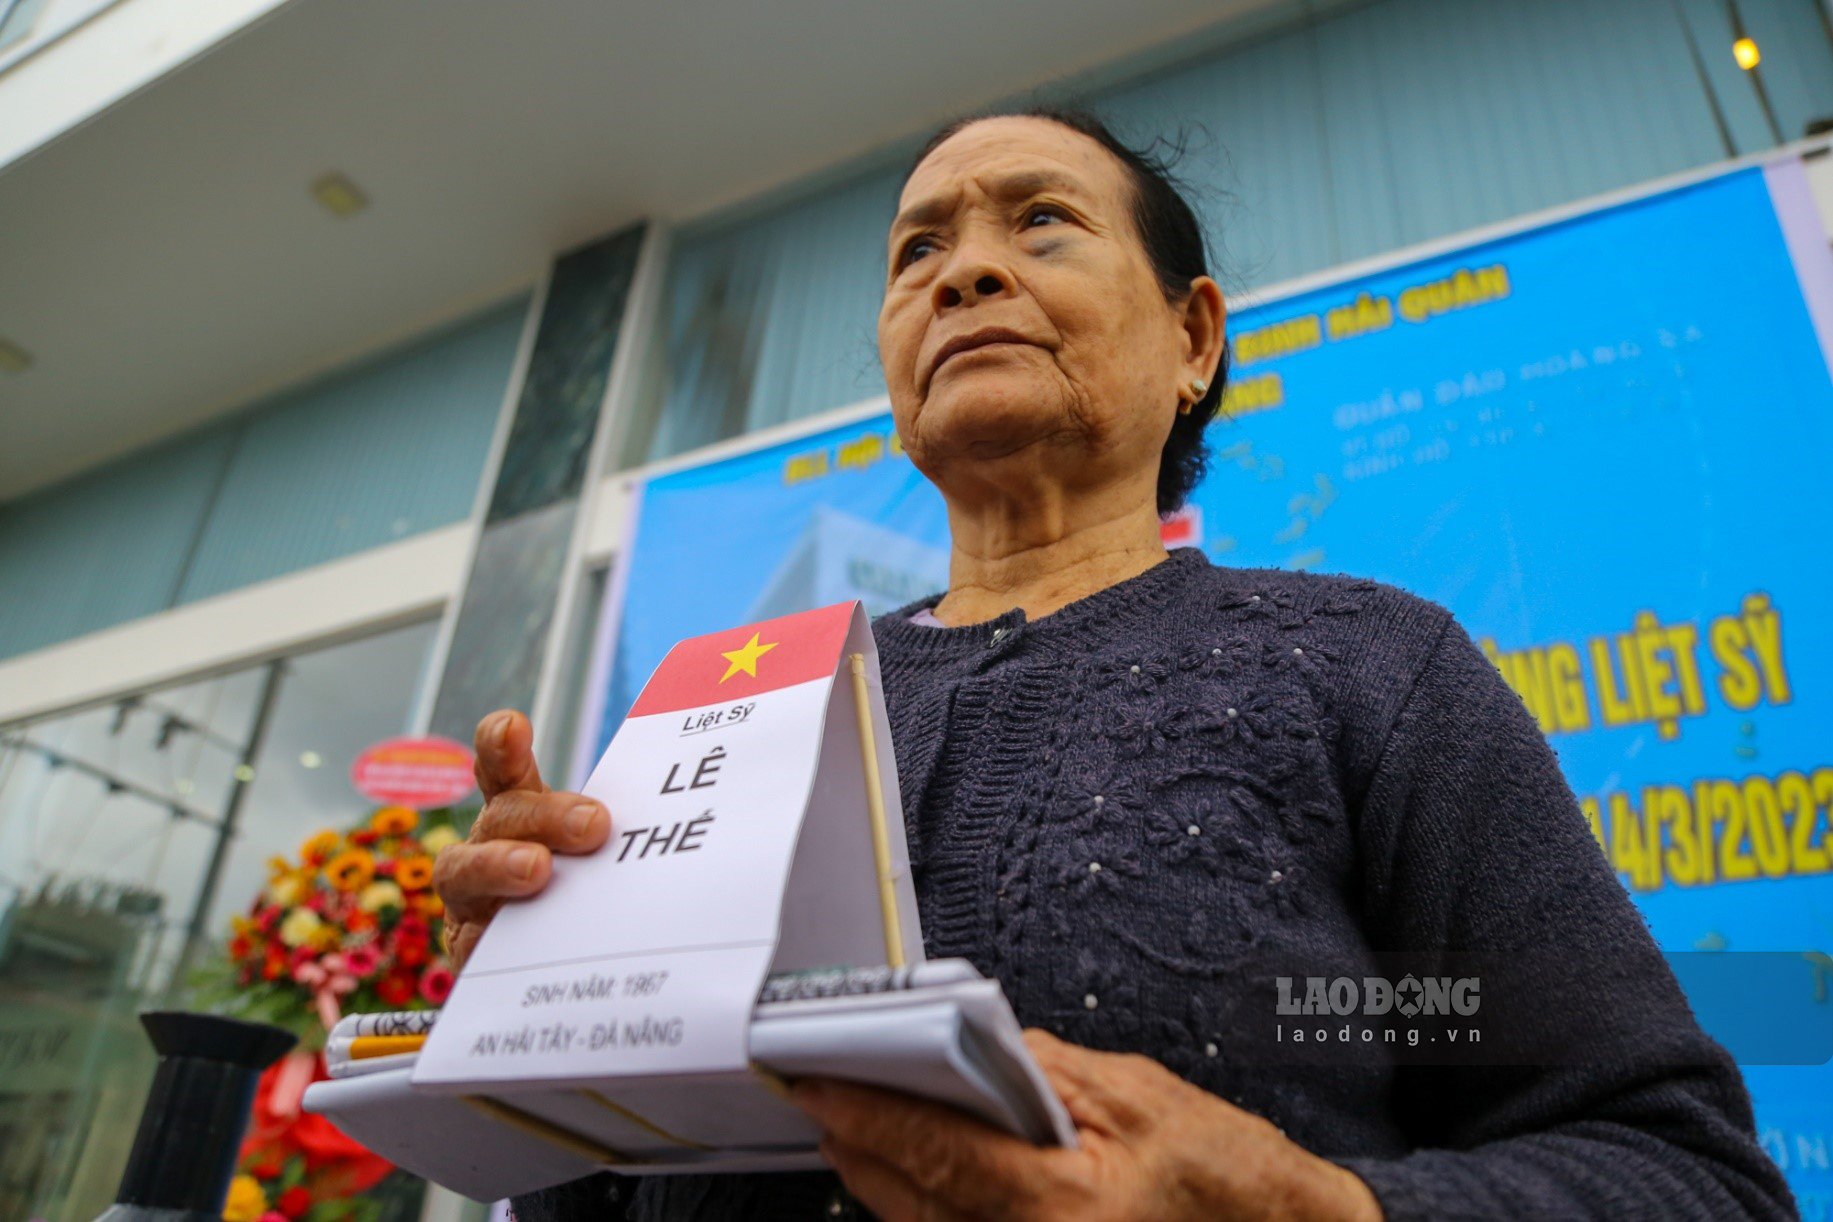 Còn đối với bà Trần Thị Huệ, mẹ liệt sĩ Lê Thế, tuy đau lòng nhưng vẫn luôn tự hào khi con mình hi sinh vì sự nghiệp bảo vệ biển đảo quê hương.